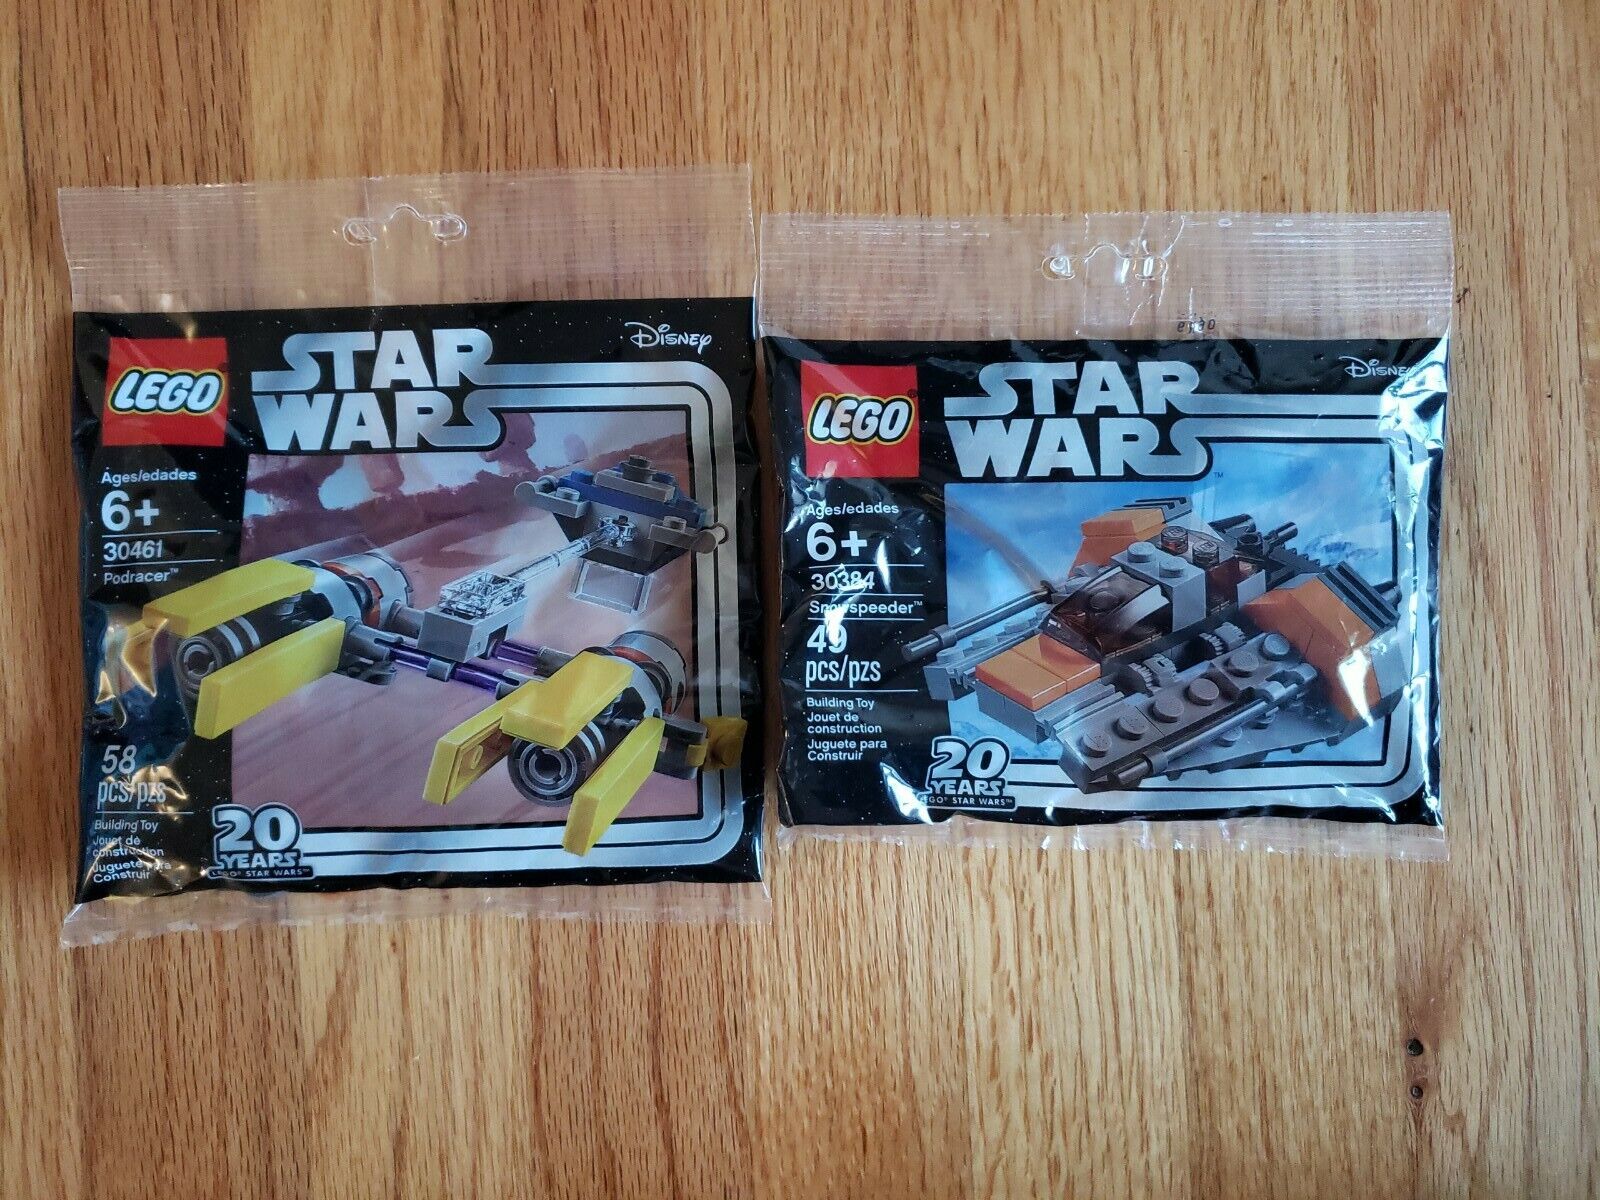 Lego Star Wars 30384 & 30461, Snowspeeder, Podracer 20th Anniversary New Sealed 